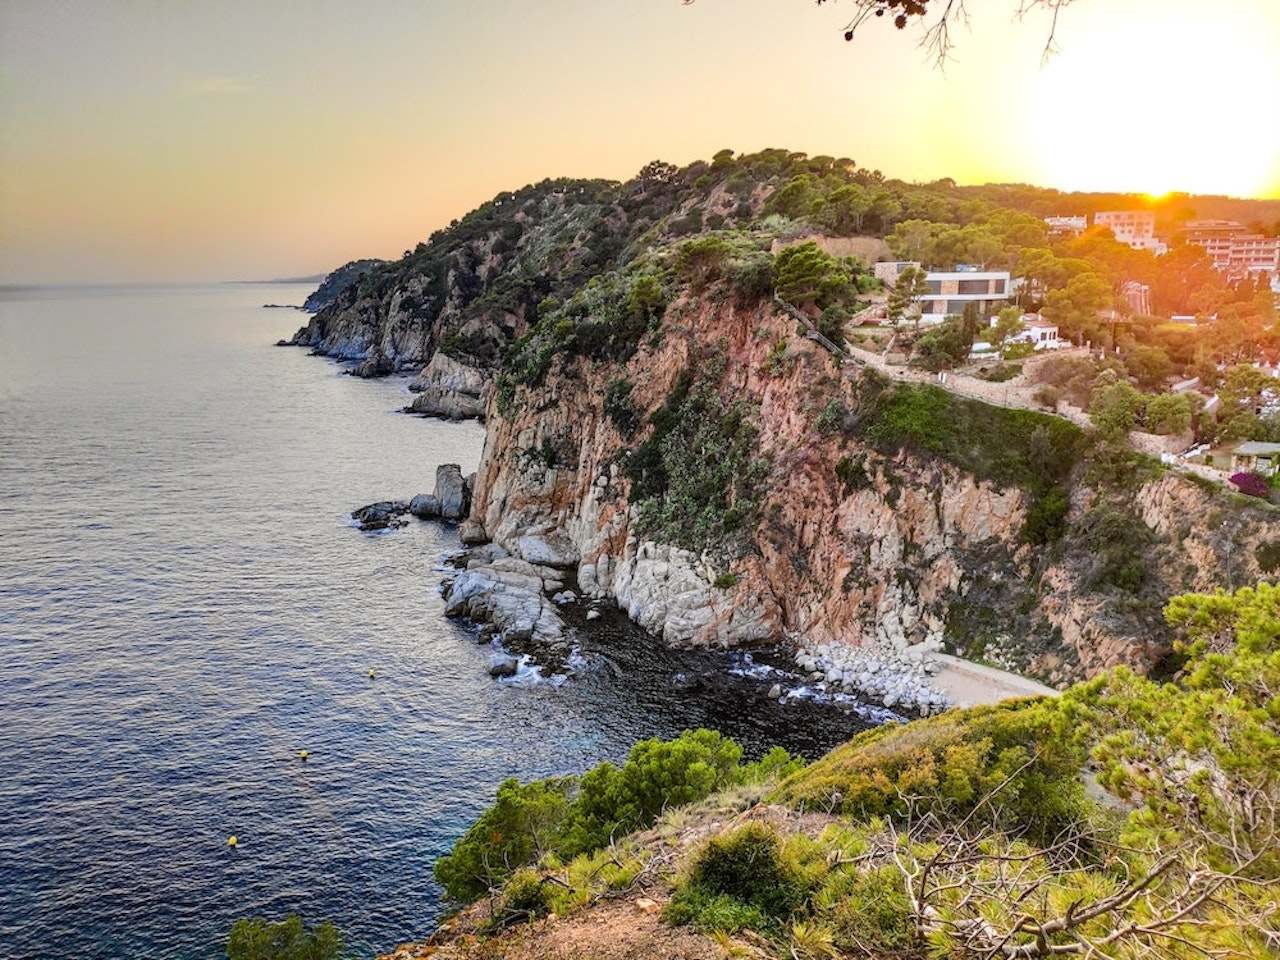 Cliffs in Tossa de Mar, Catalonia